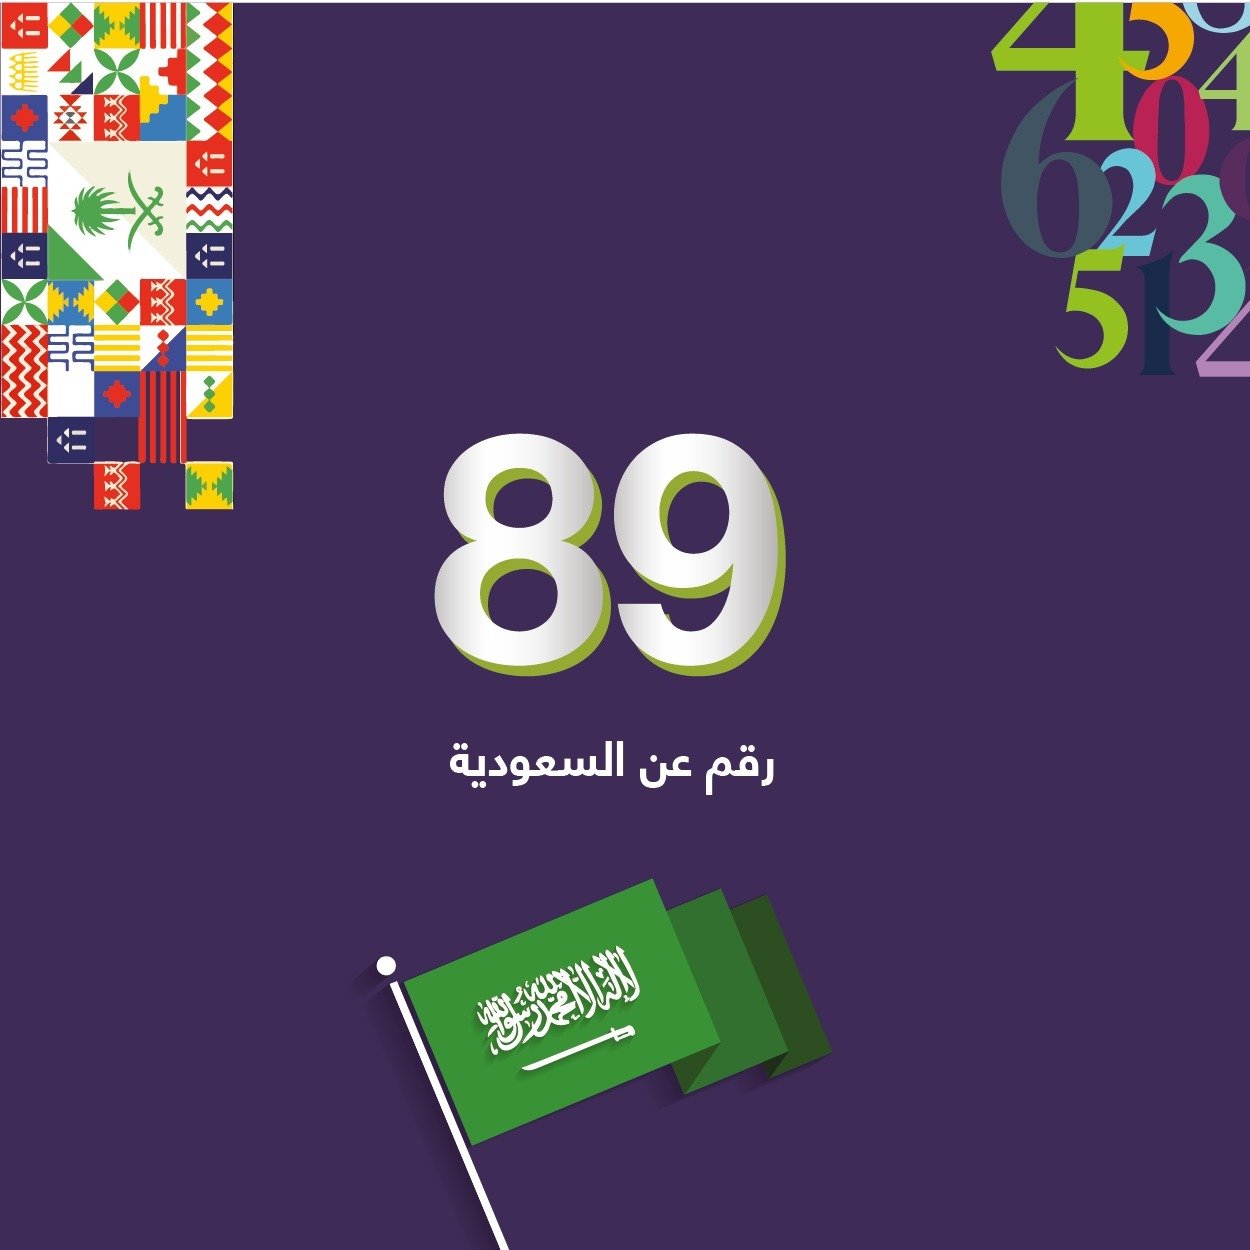 89 رقم عن السعودية